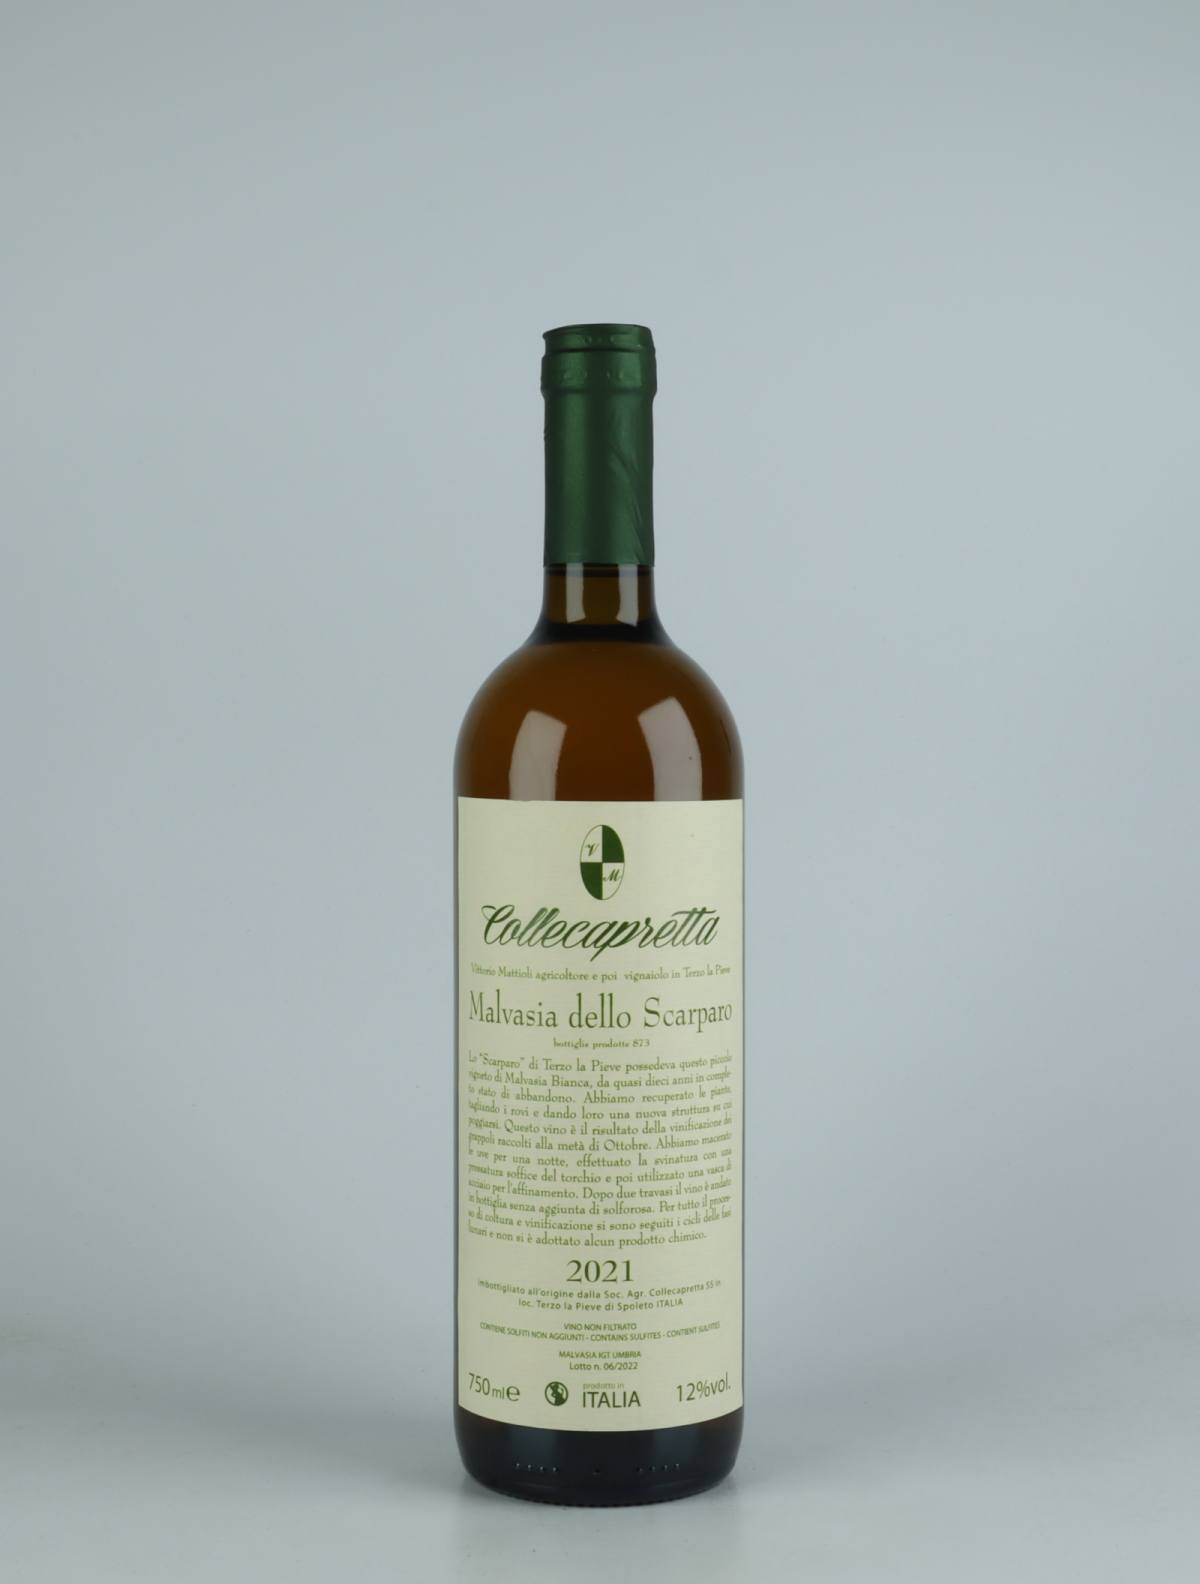 A bottle 2021 Malvasia dello Scarparo Orange wine from Collecapretta, Umbria in Italy